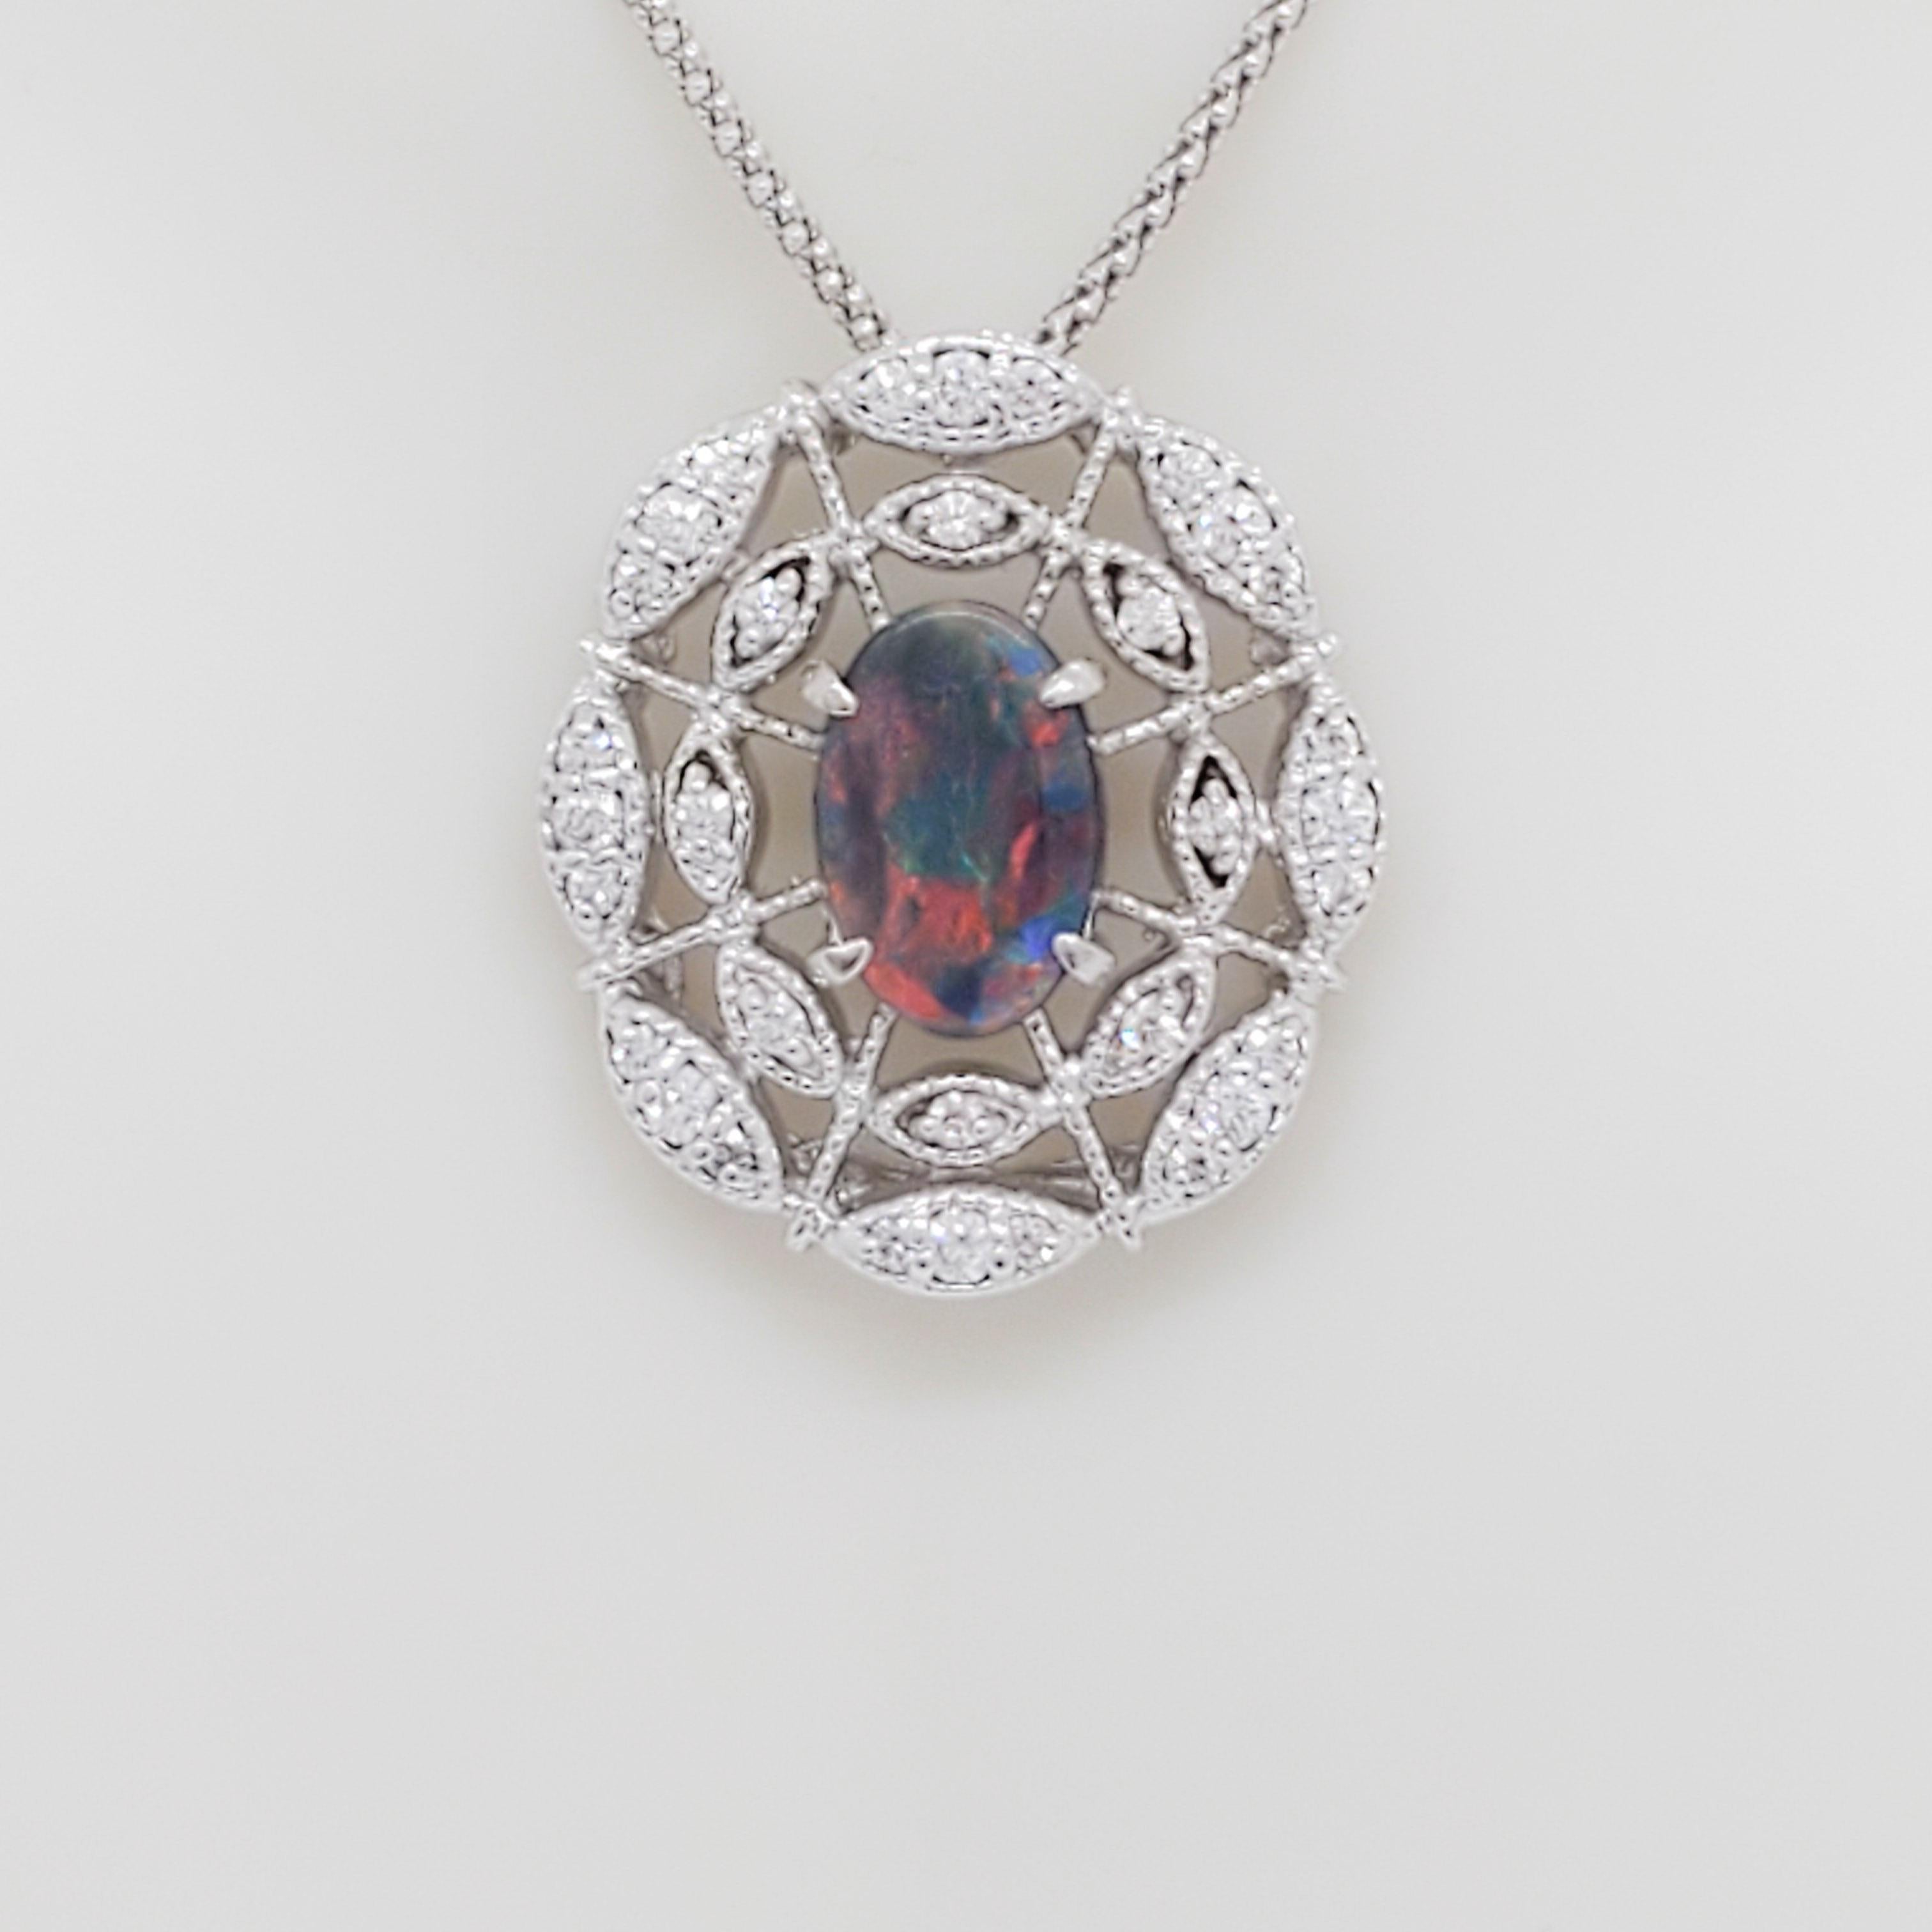 Wunderschöner schwarzer Opal von 0,91 ct. mit runden weißen Diamanten von 0,52 ct. guter Qualität.  Handgefertigt aus 18k Weißgold.  Die Kette ist 18